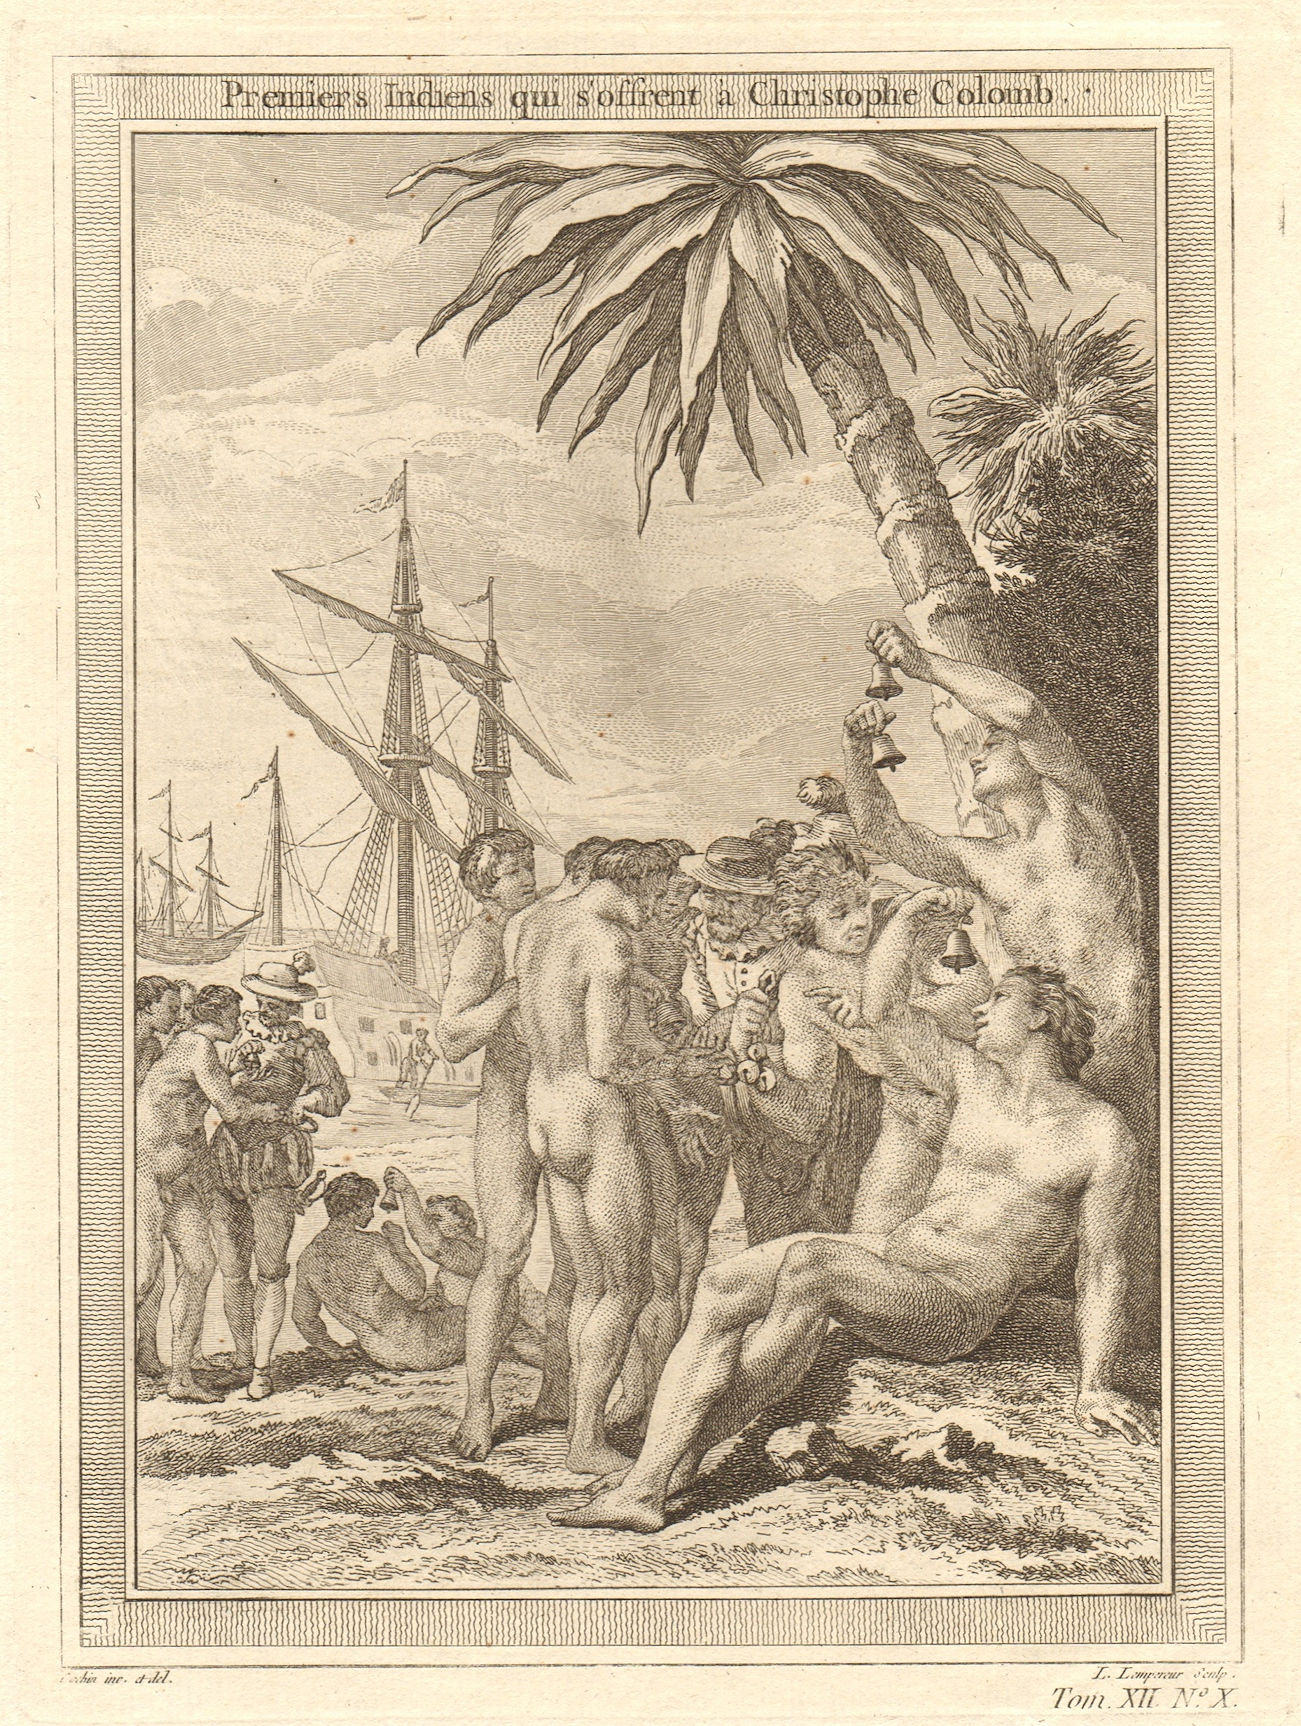 First Indians meeting Christopher Columbus. San Salvador Island, Bahamas 1754